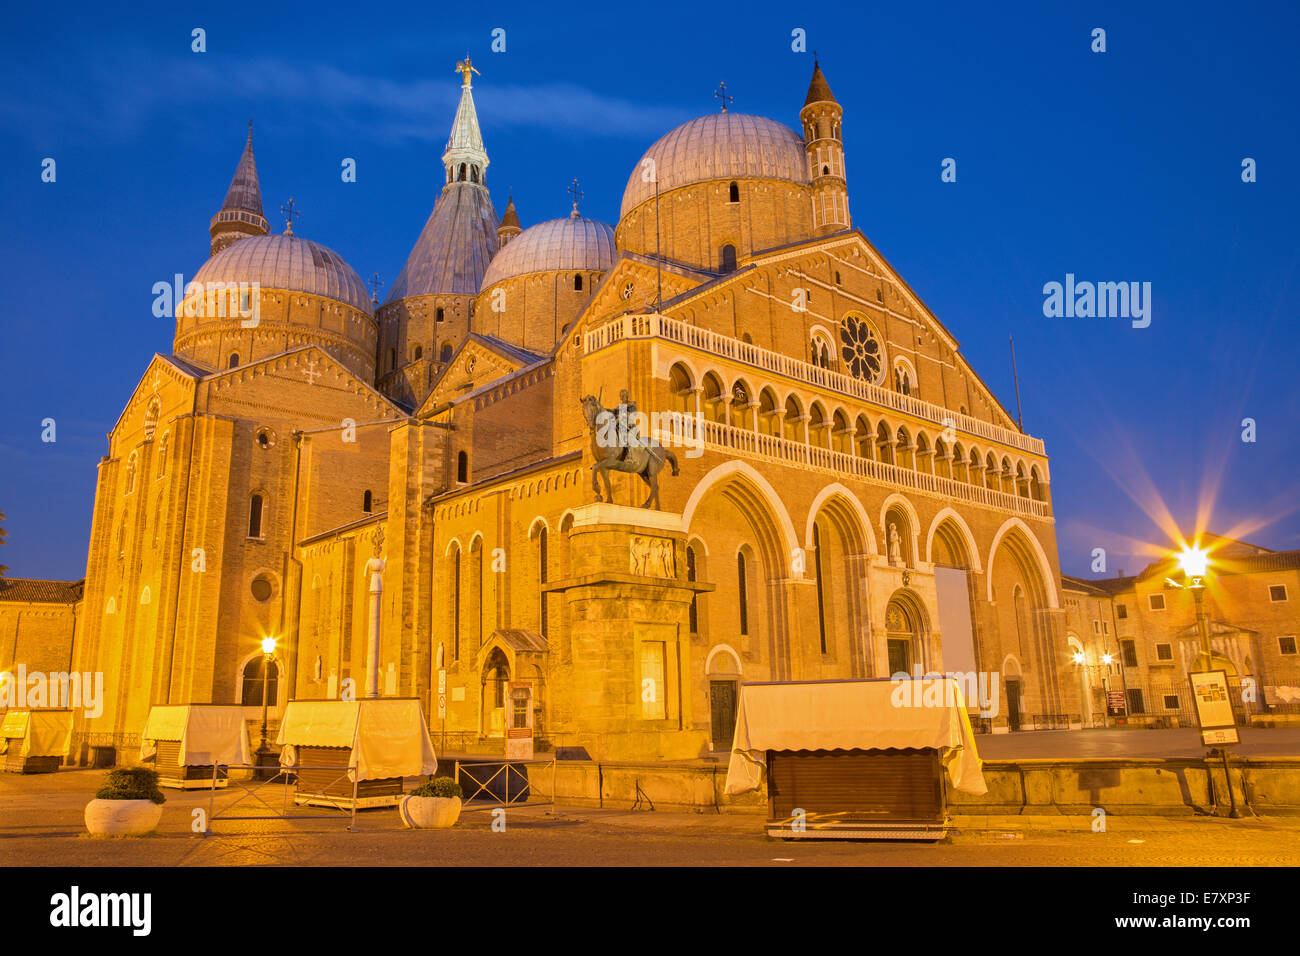 Padoue, Italie - 8 septembre 2014 : Basilica del Santo ou Basilique de Saint Antoine de Padoue dans le crépuscule du soir. Banque D'Images